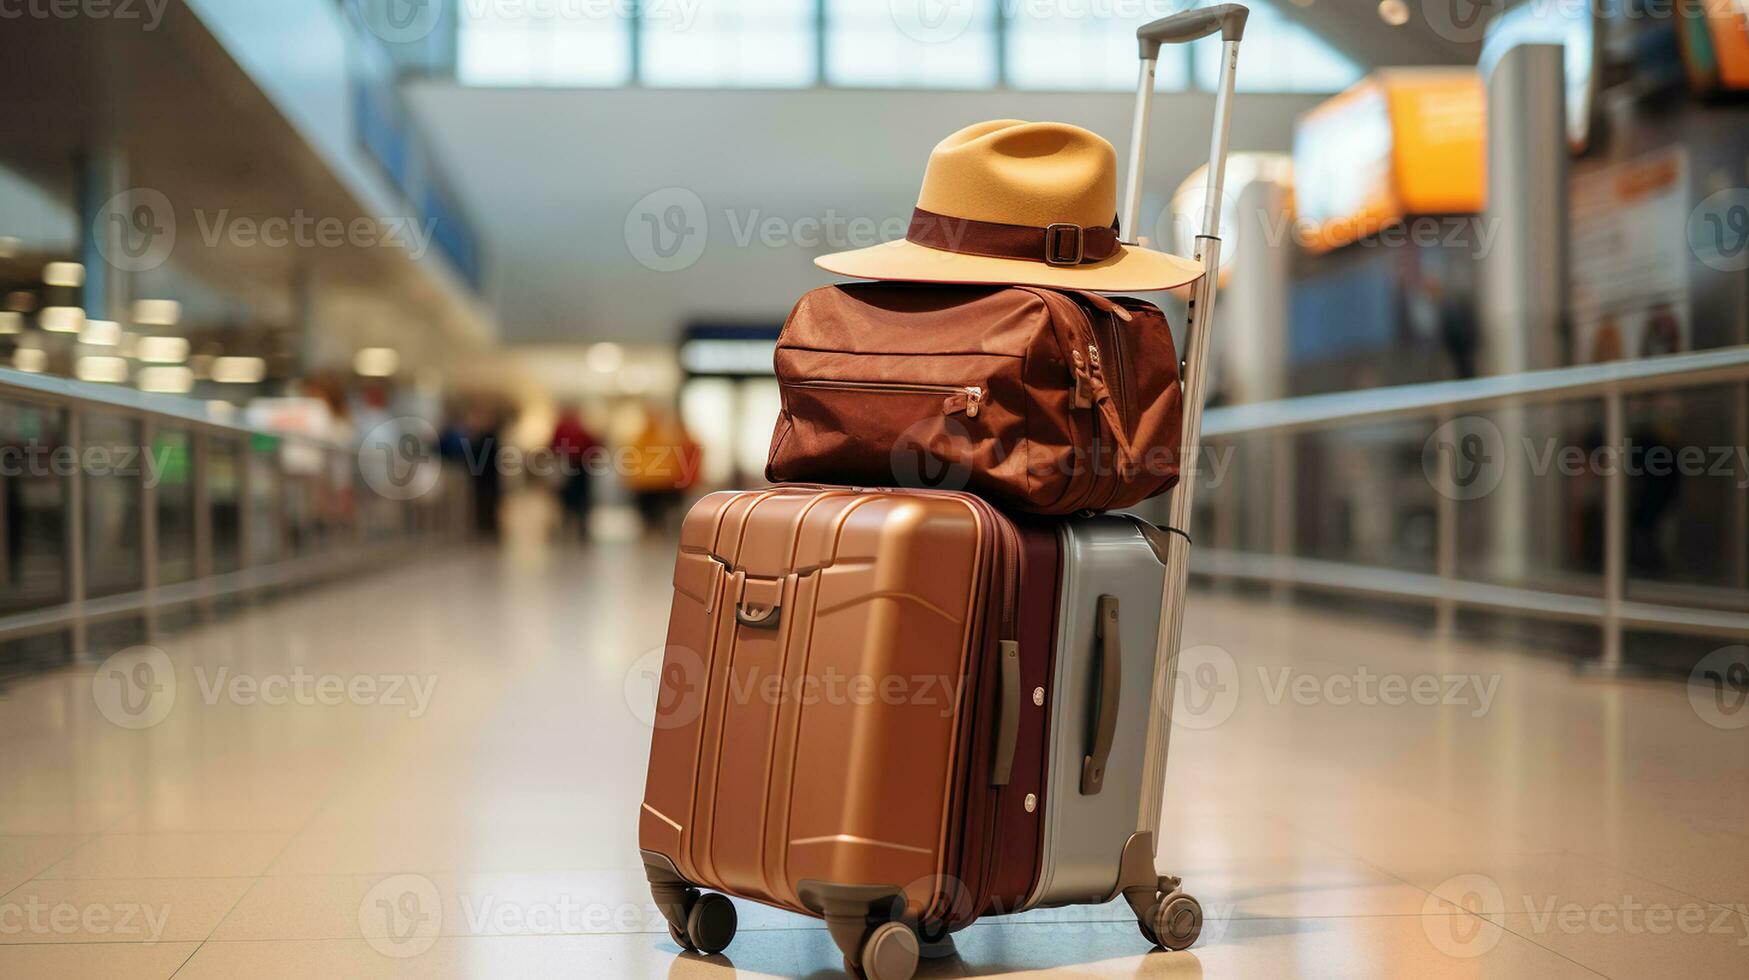 reizigers trolley met koffers en hoed in luchthaven terminal foto